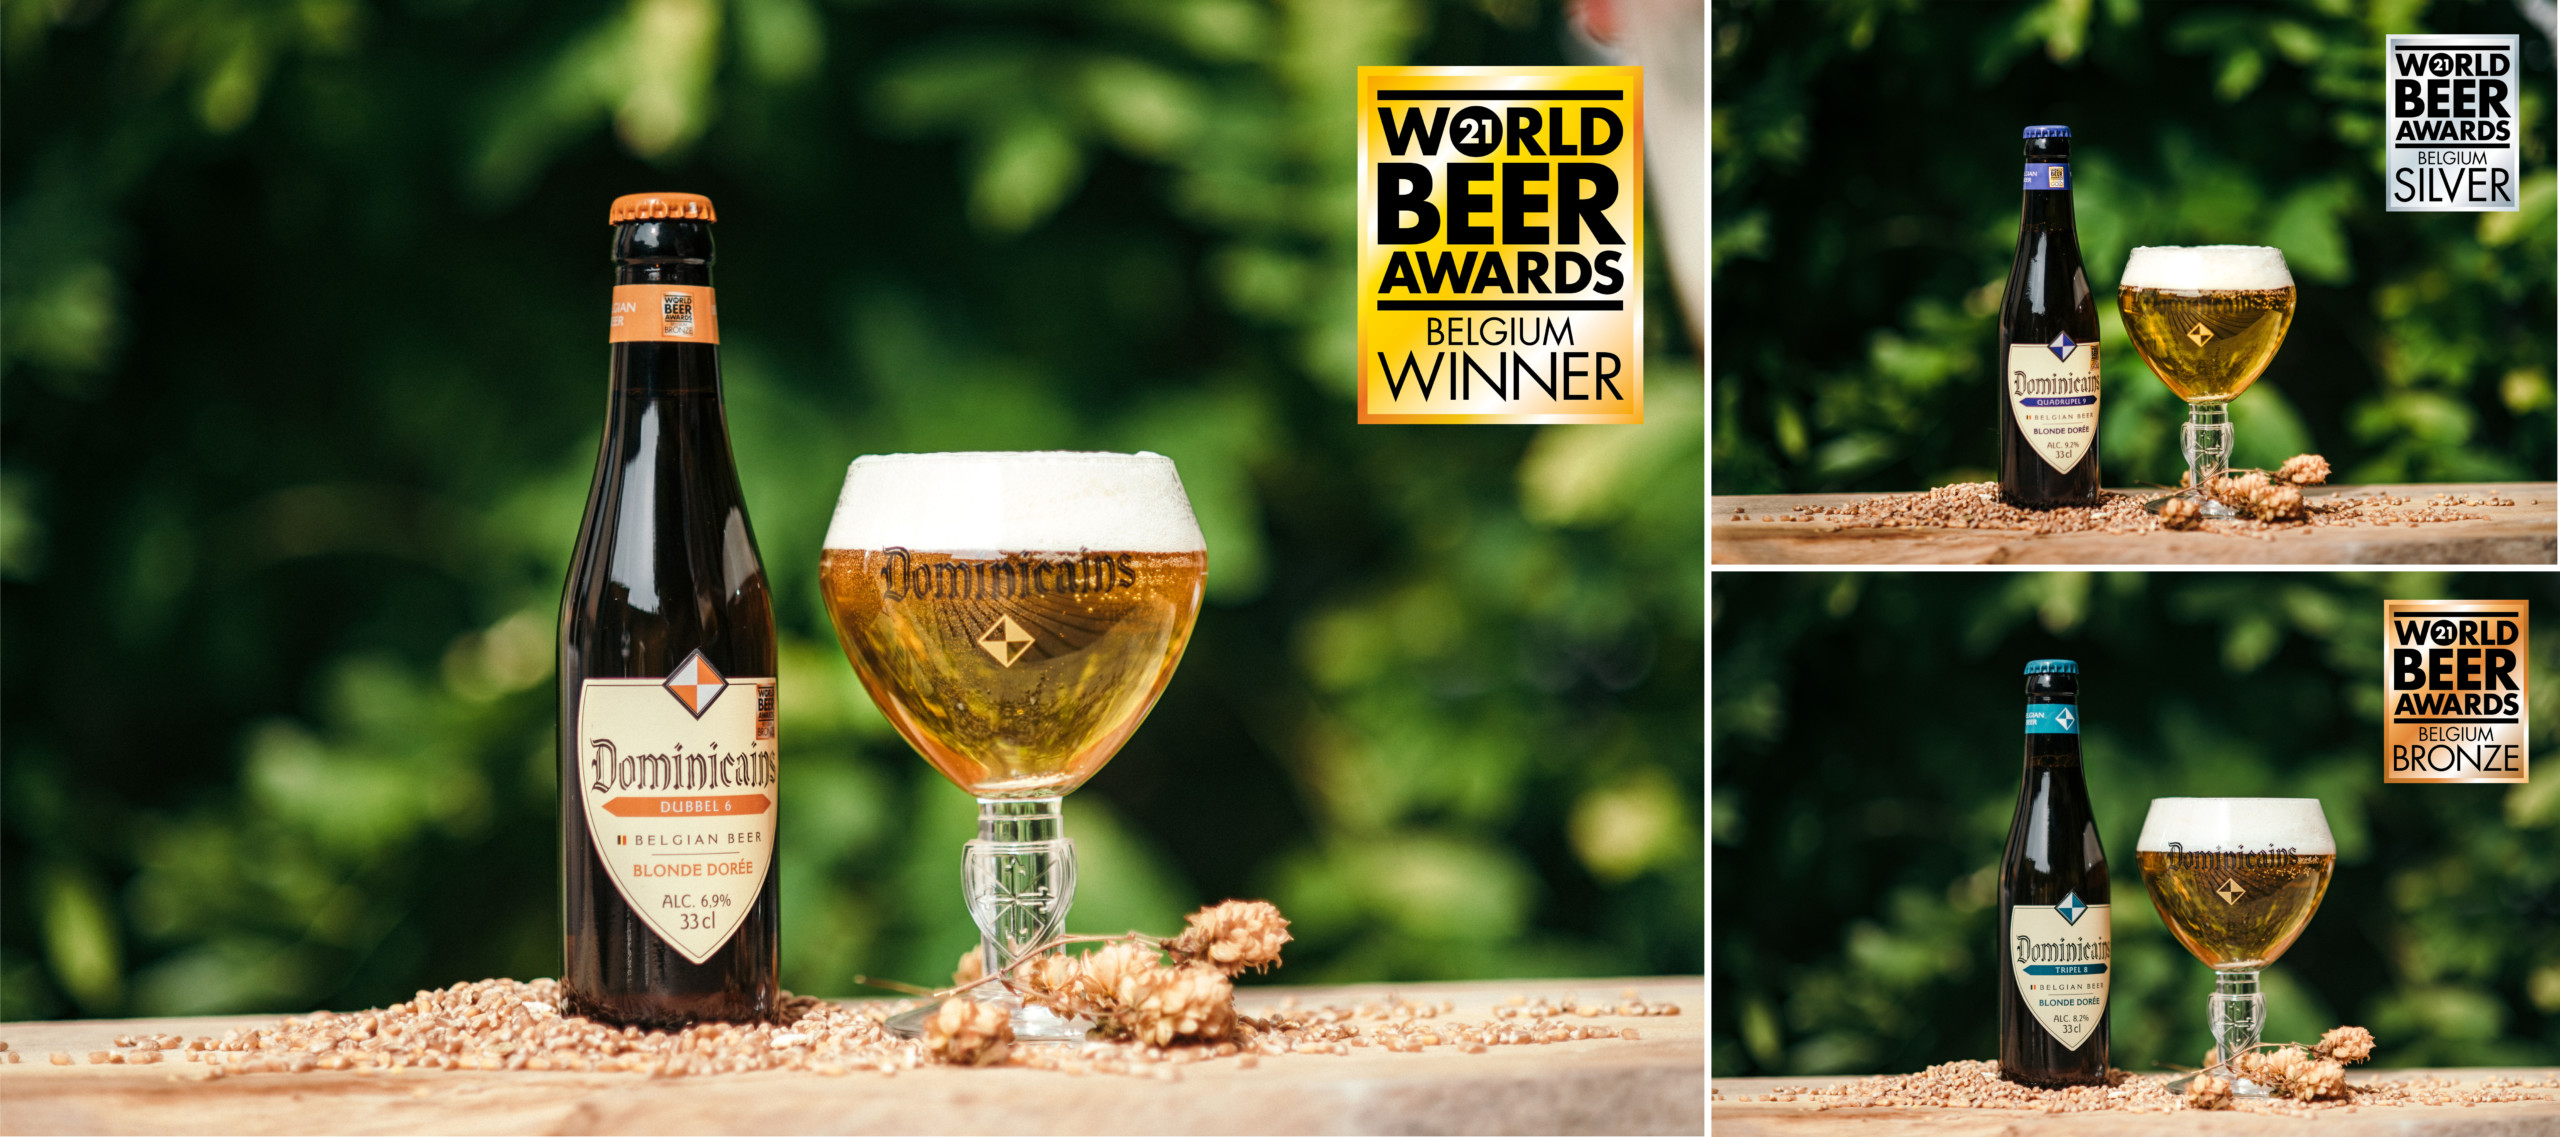 La meilleure bière belge : Dominicains Dubbel